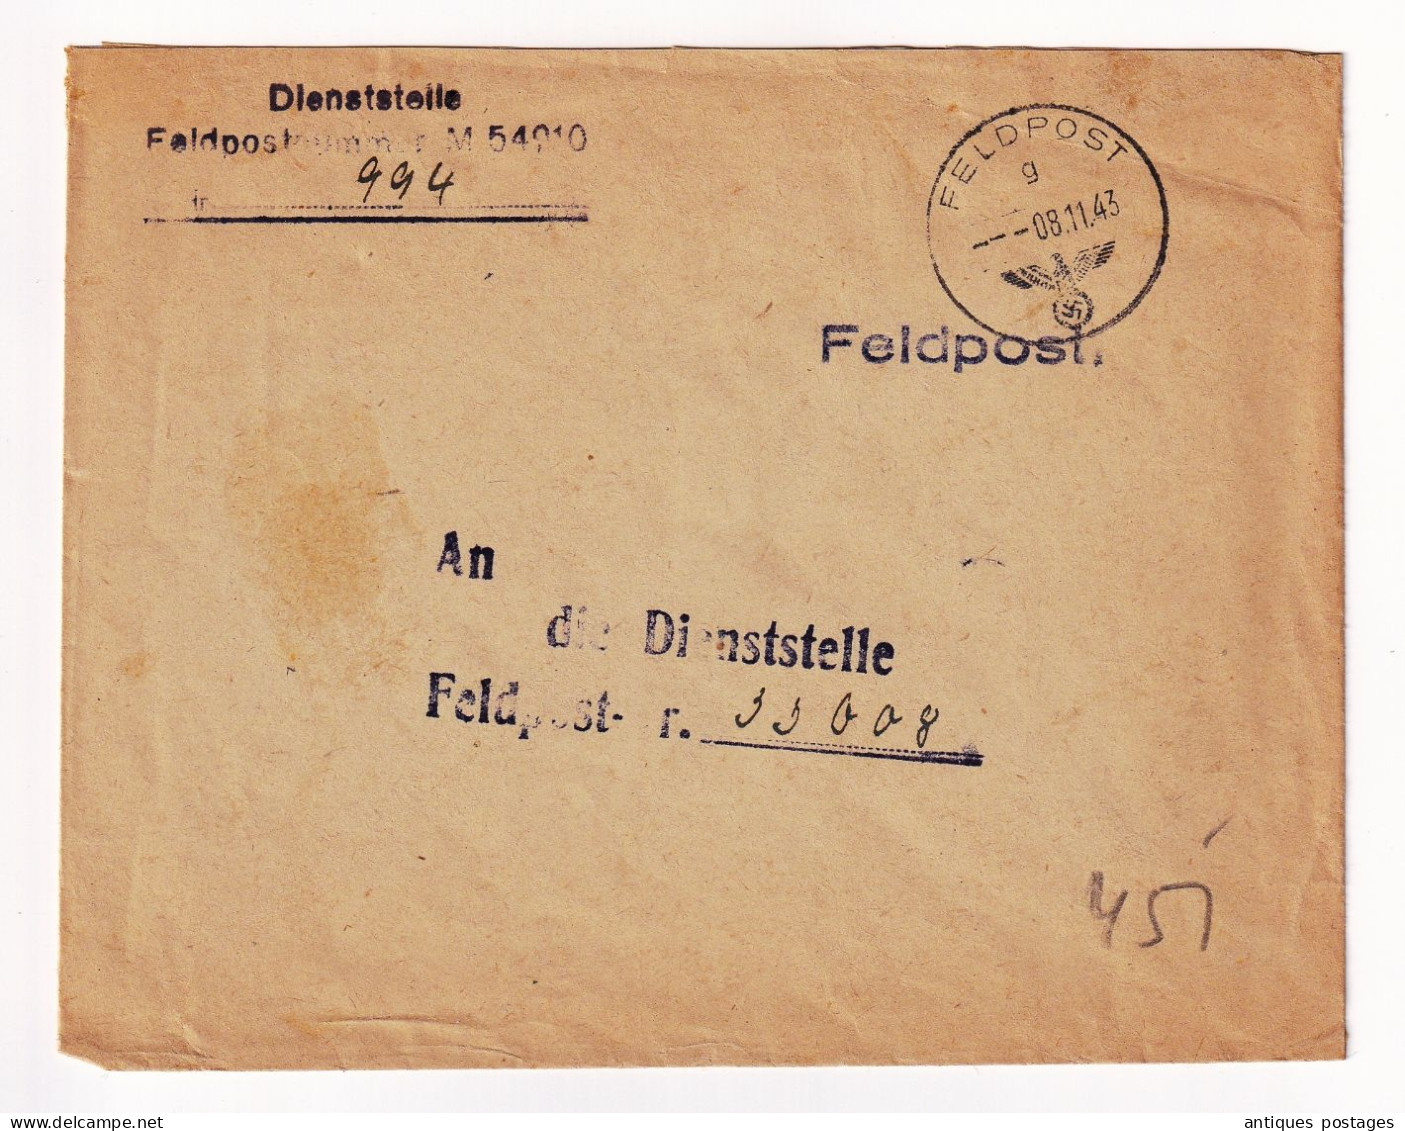 WW2 Feldpost 1943 Dienststelle Deutschland Allemagne Poste Militaire - Feldpost 2a Guerra Mondiale